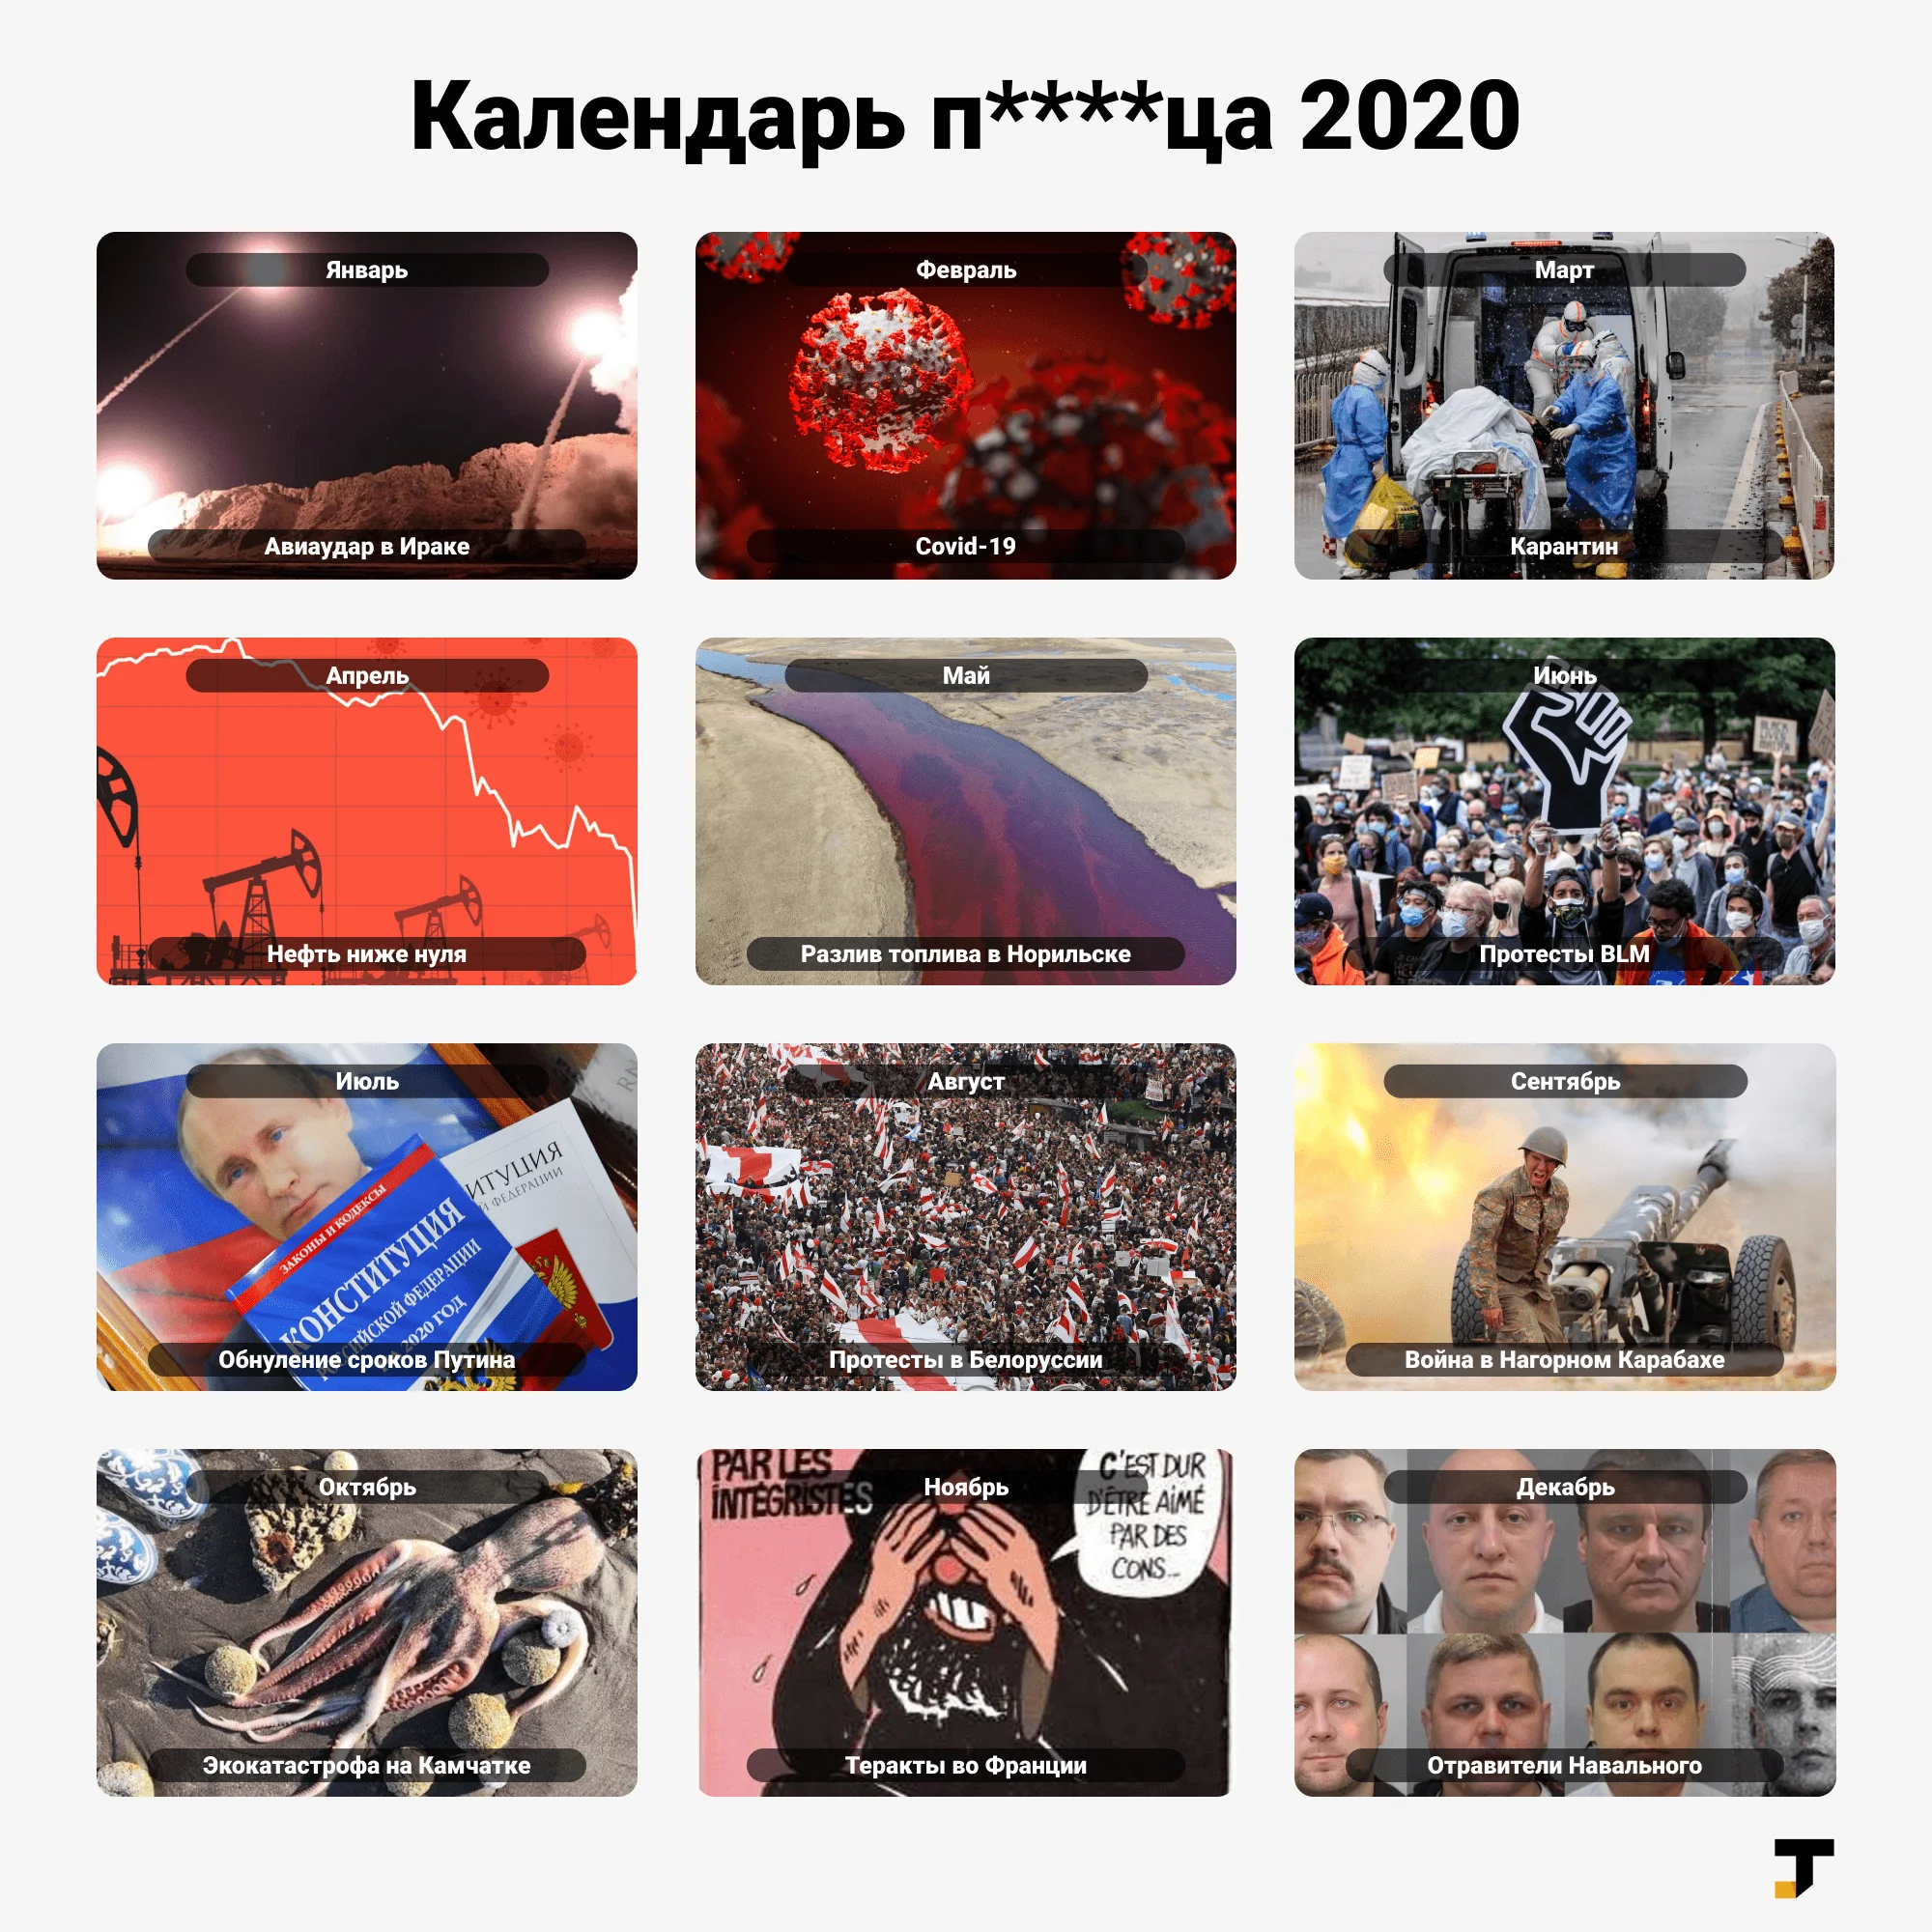 «Календарь п****ца 2020»: главные события каждого месяца в одной картинке - фото 1